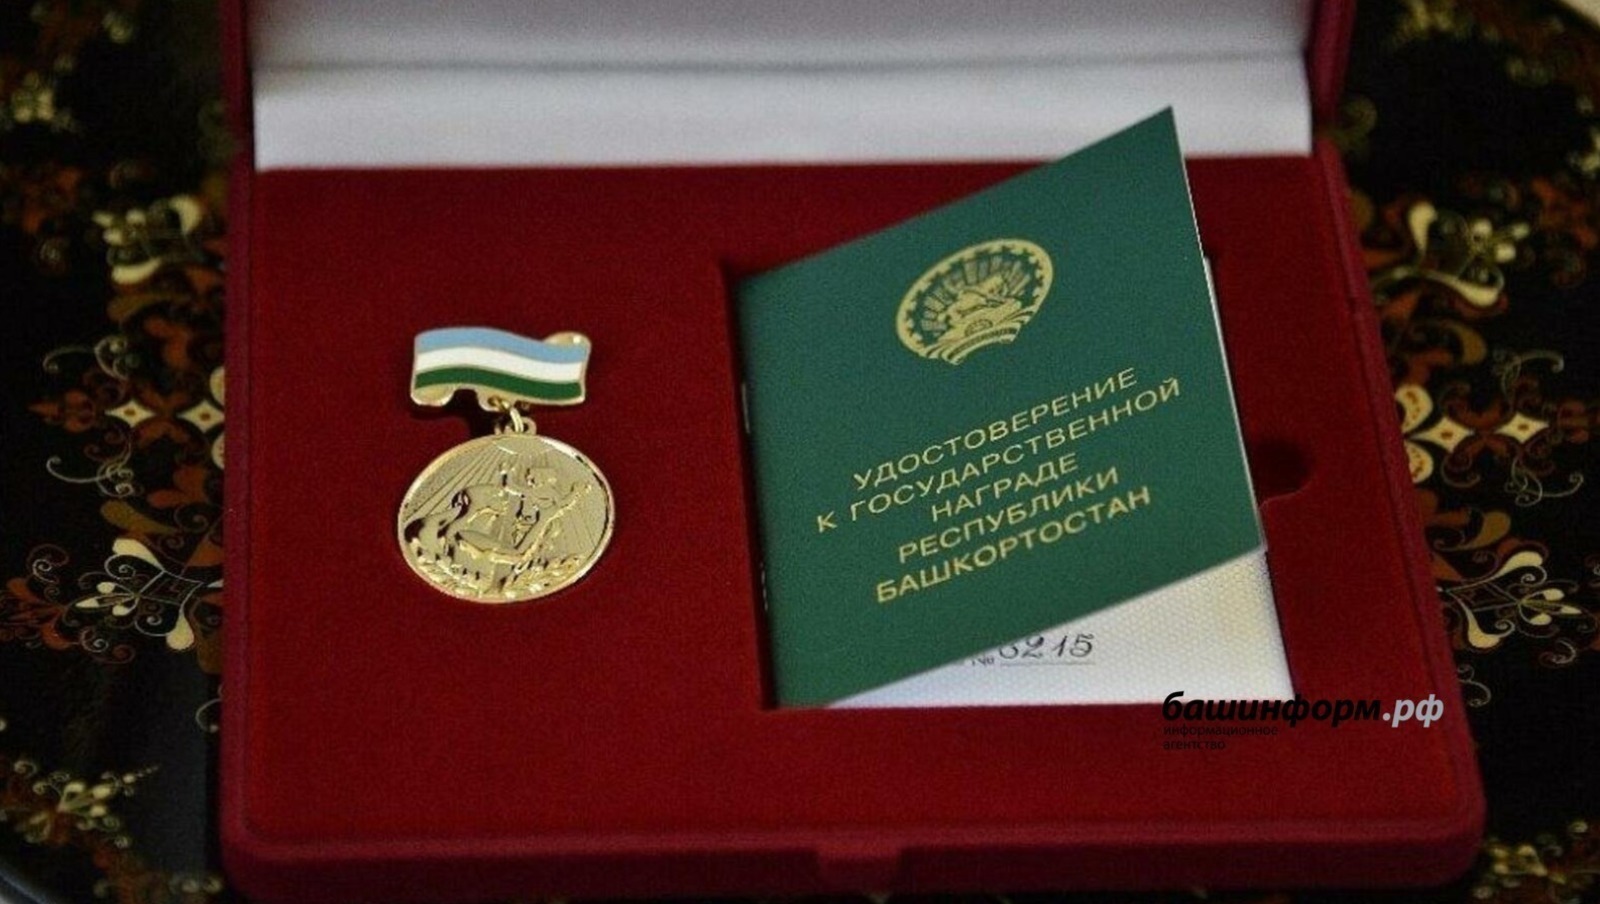 Глава Башкирии подписал указ о награждении медалью «Материнская слава»